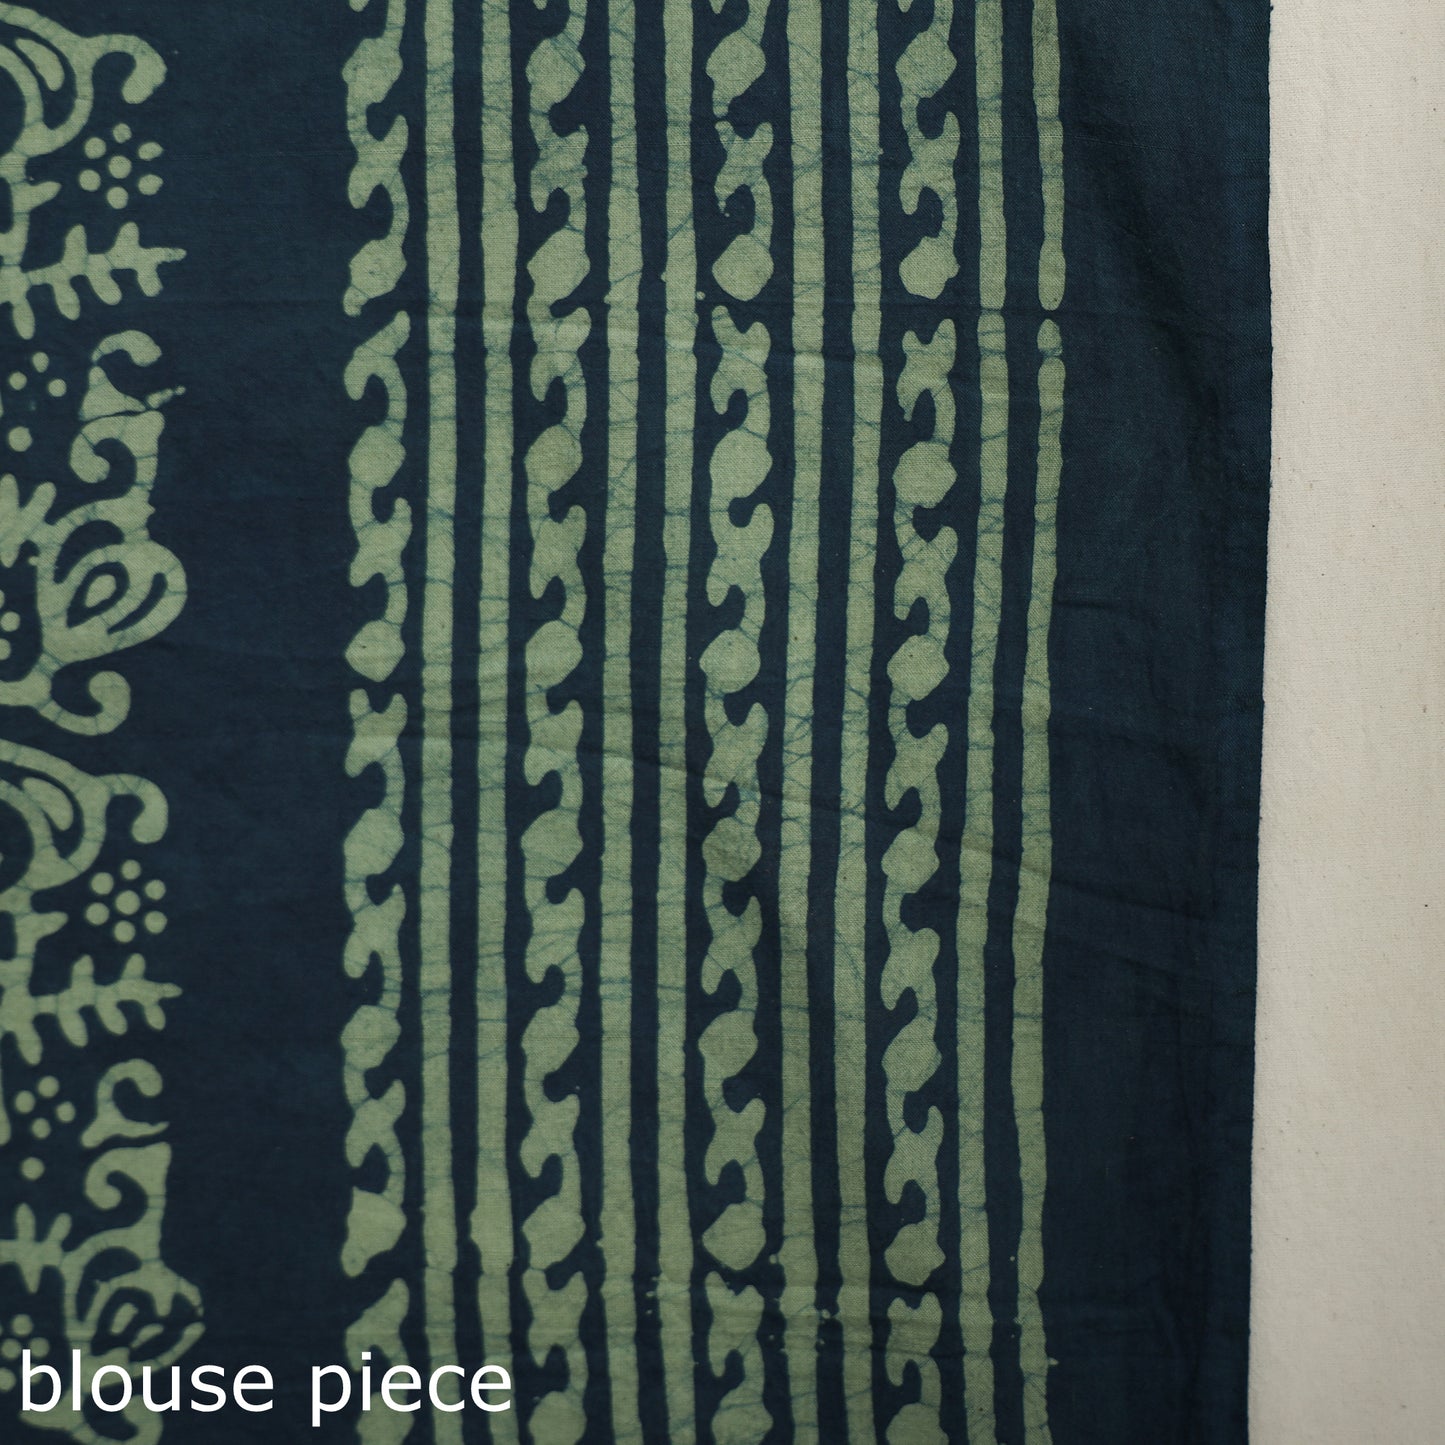 hand batik printed saree